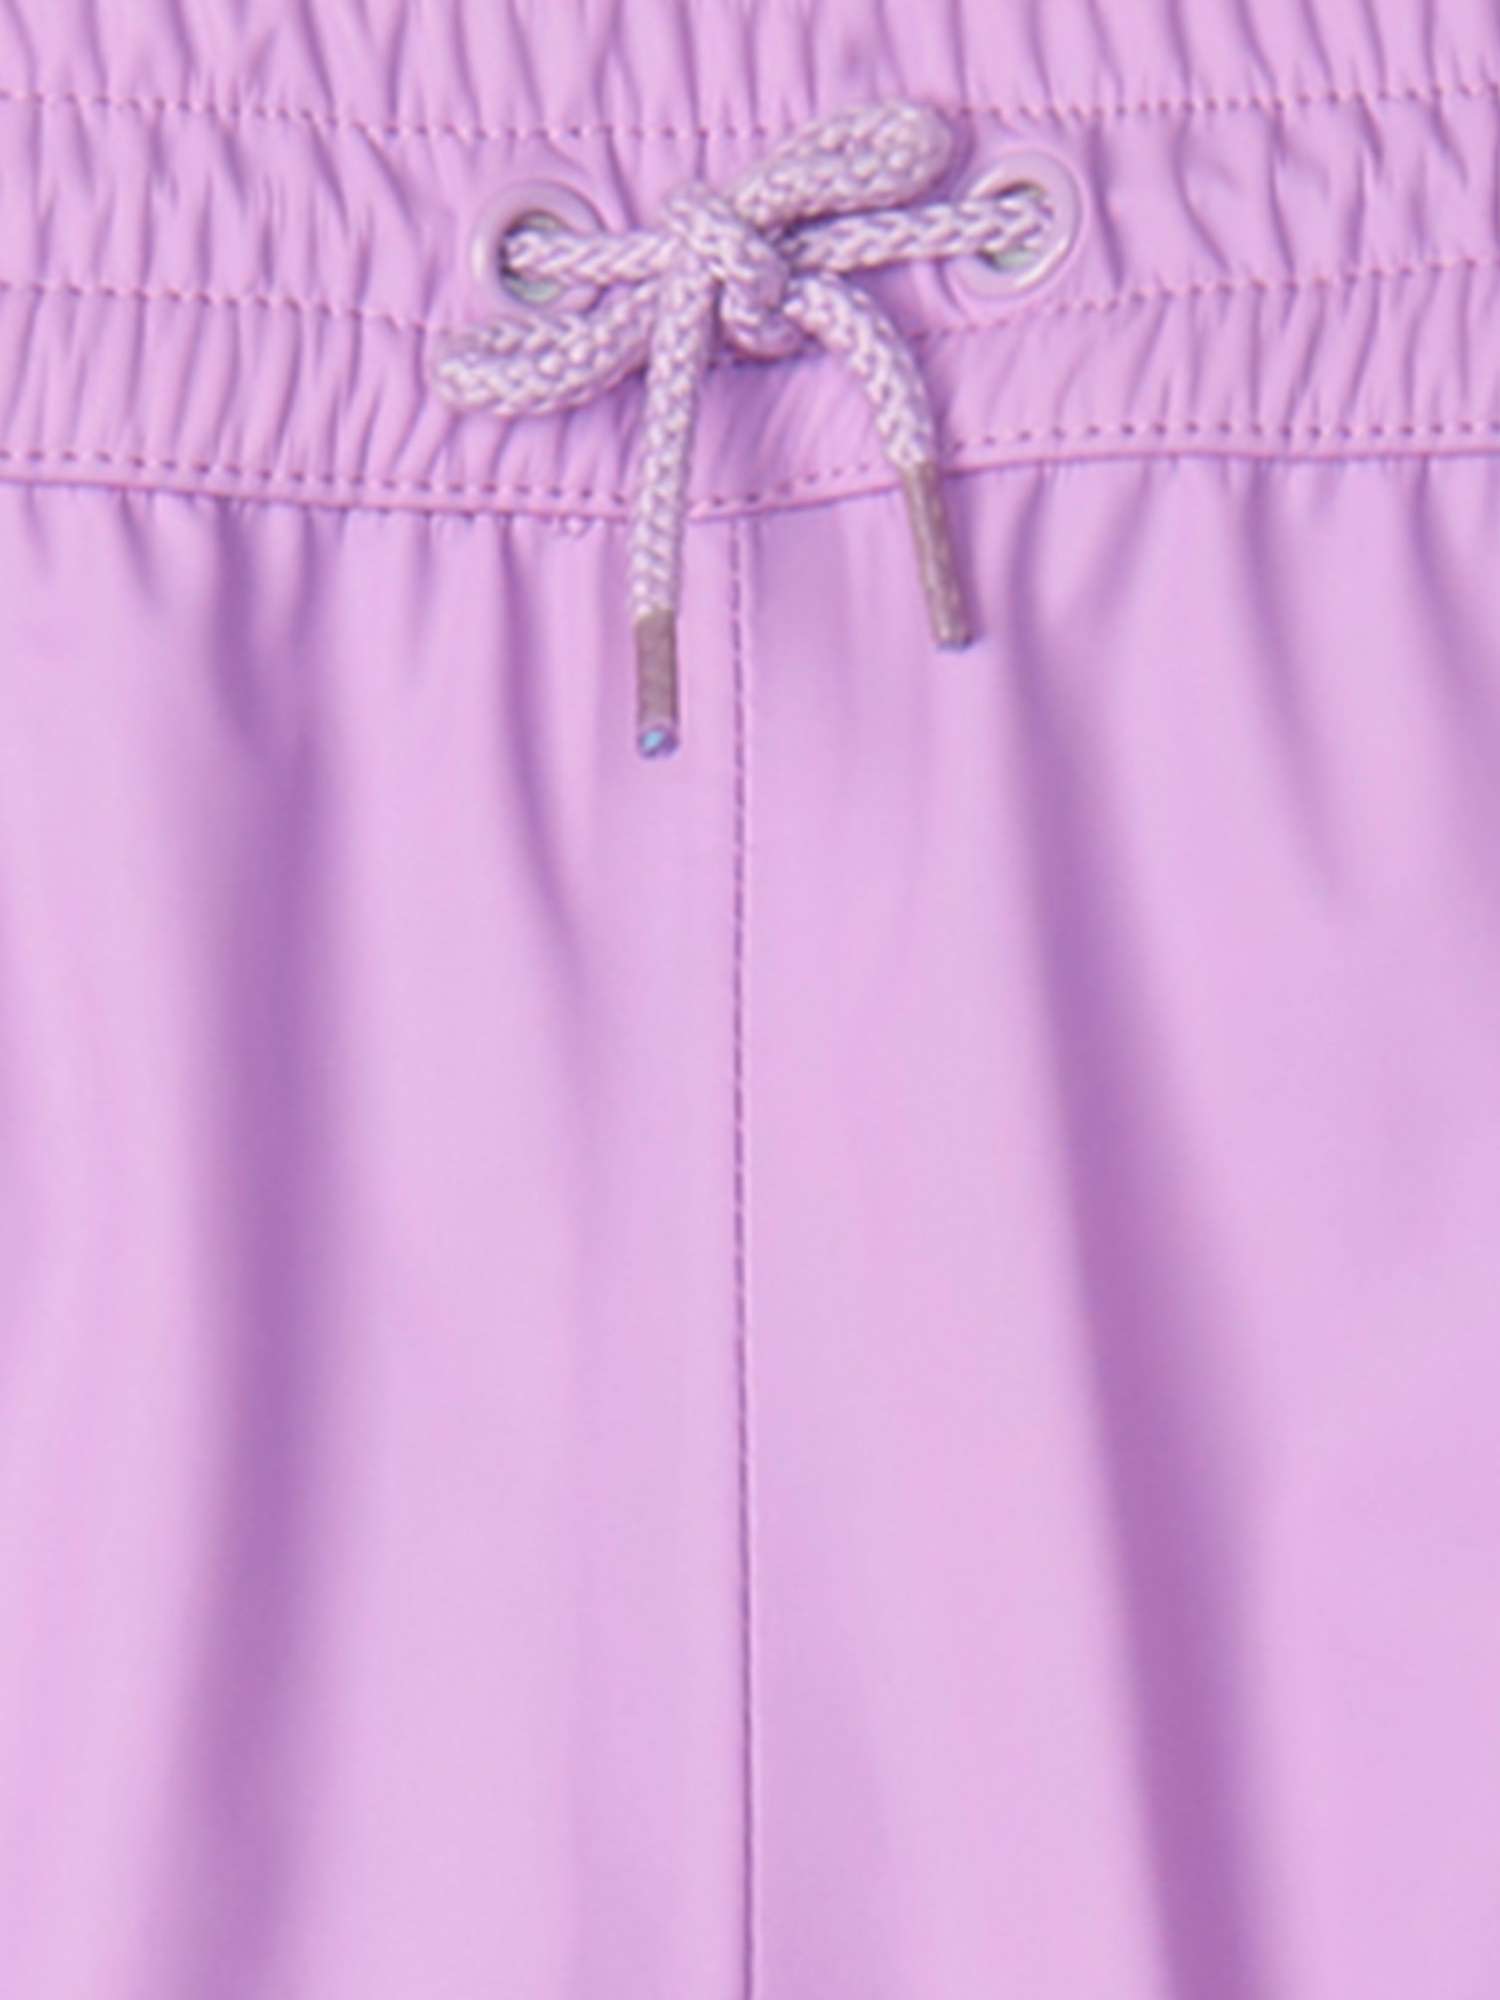 Buy Hatley Kids' Waterproof Splash Trousers, Sheer Lilac Online at johnlewis.com